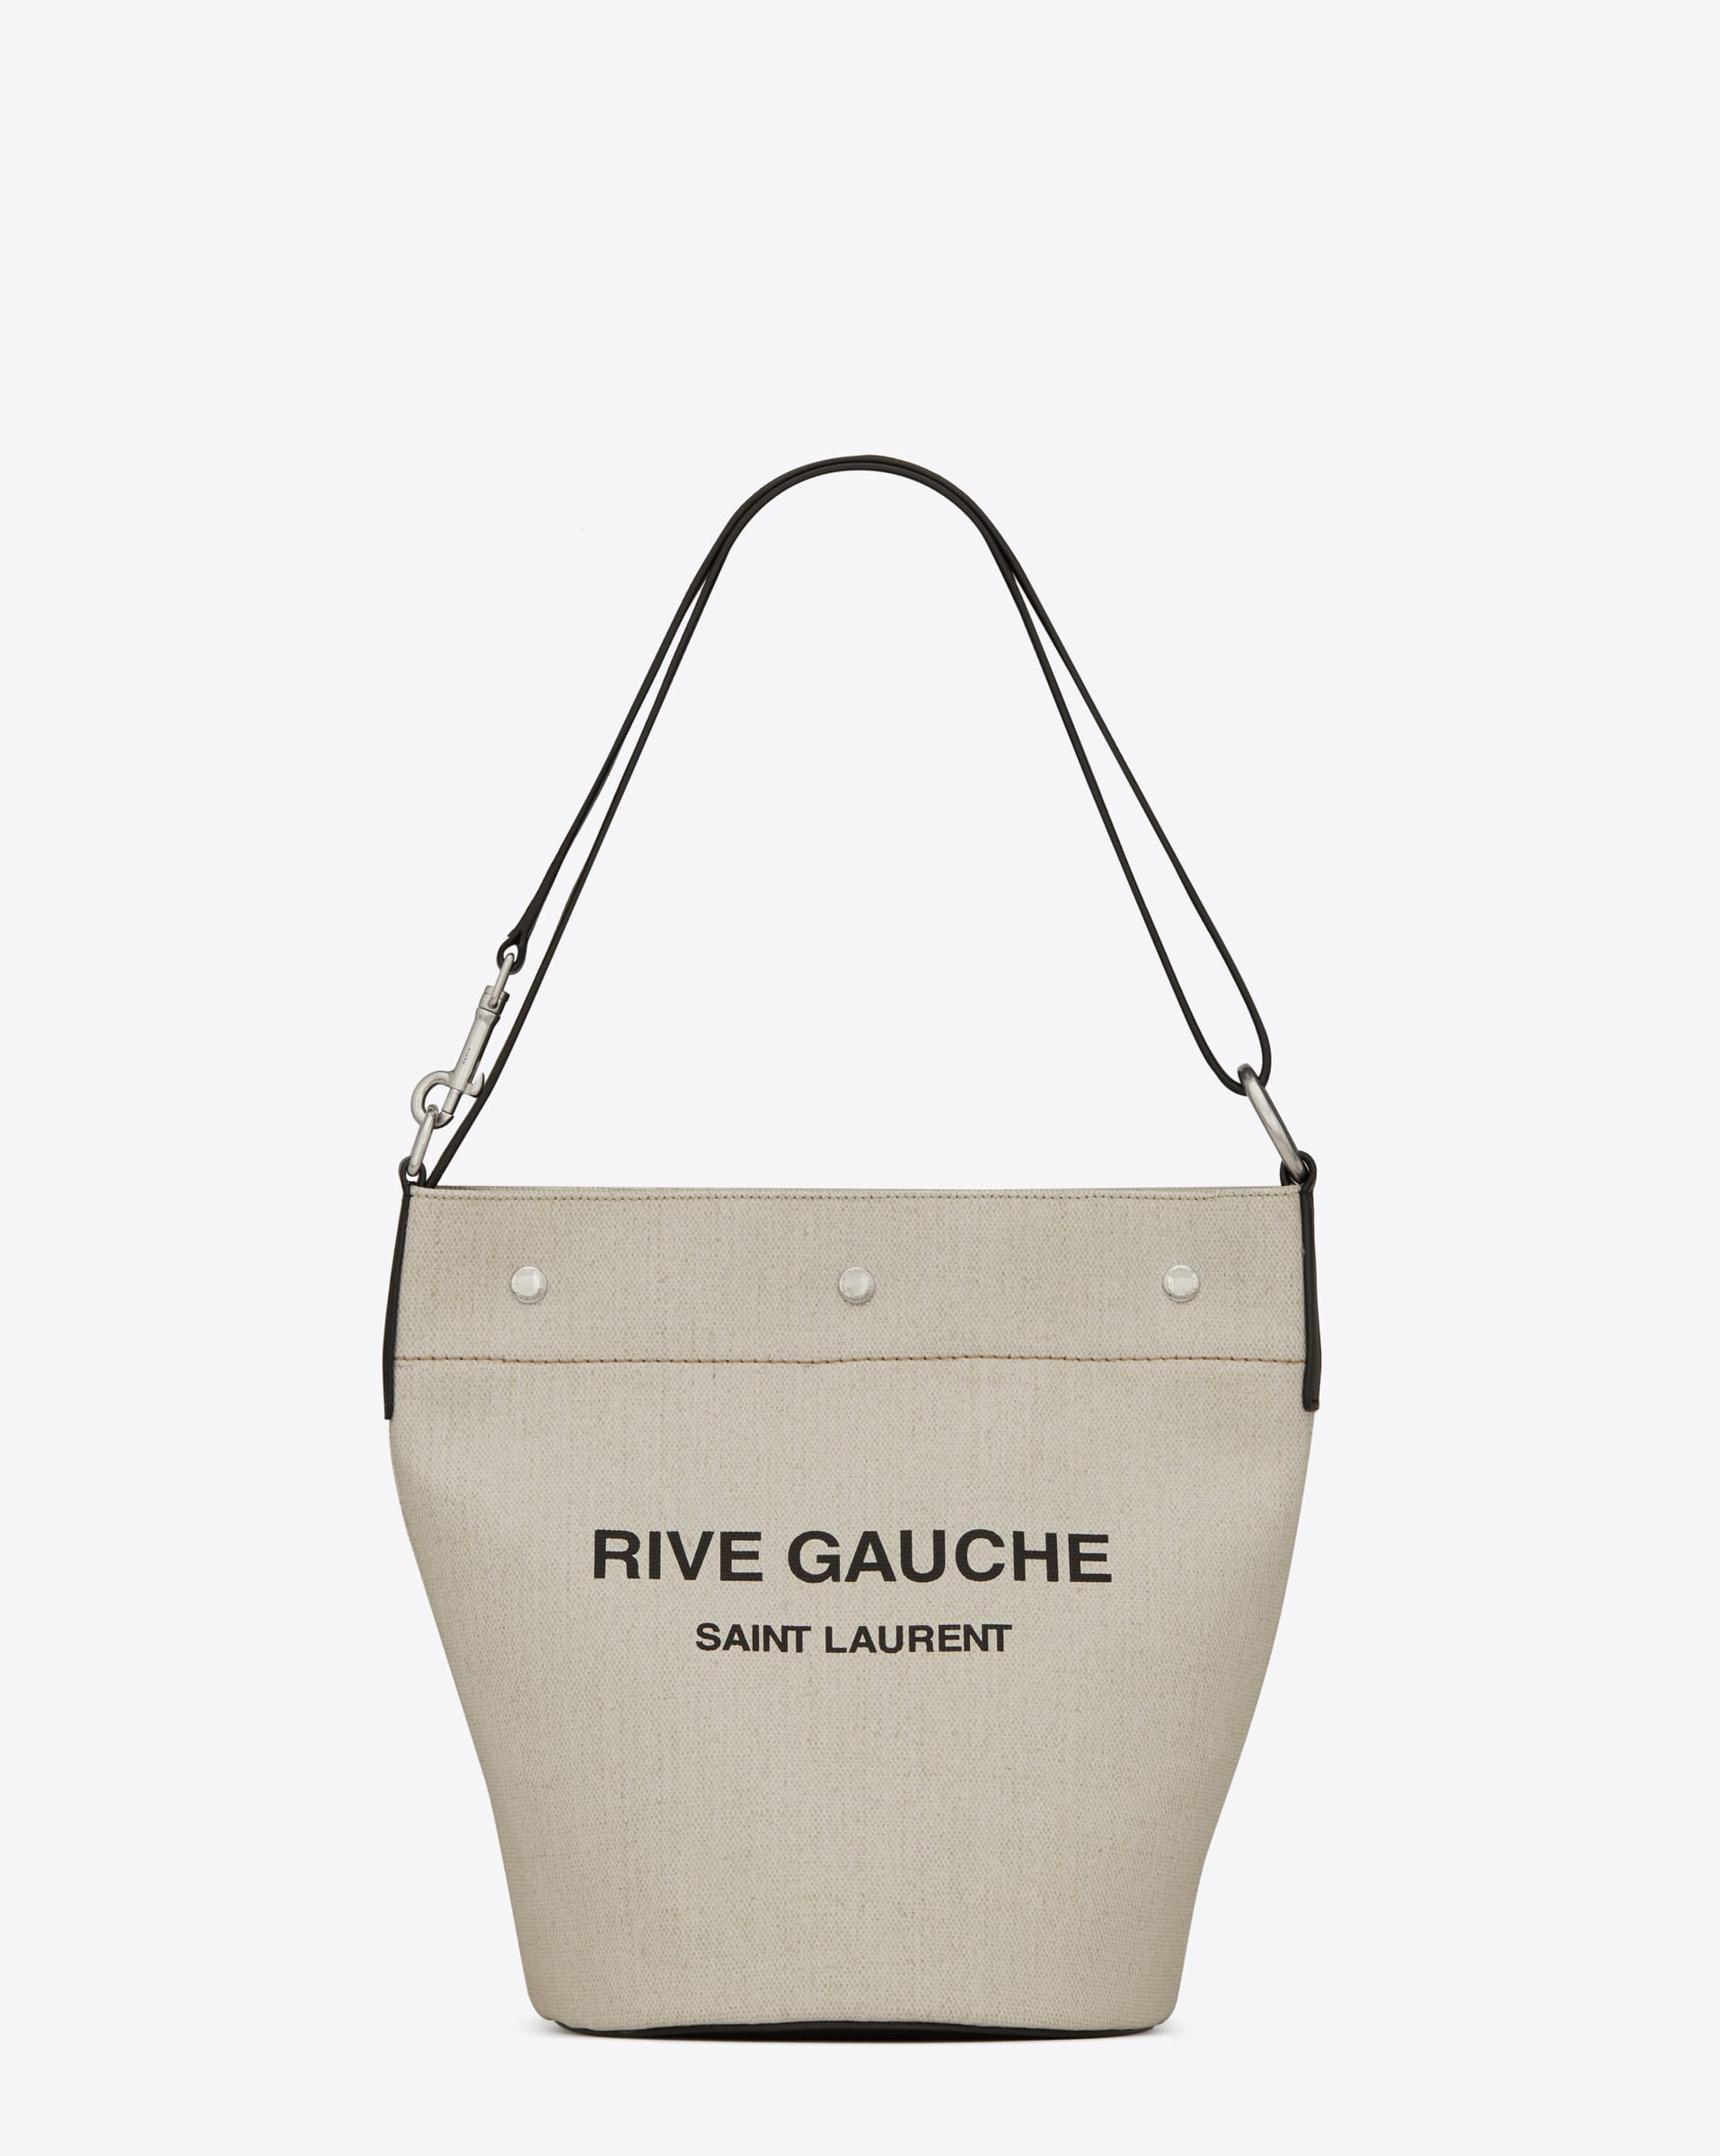 サンローランから新作バッグ「RIVE GAUCHE」が登場、スナップを閉じる 